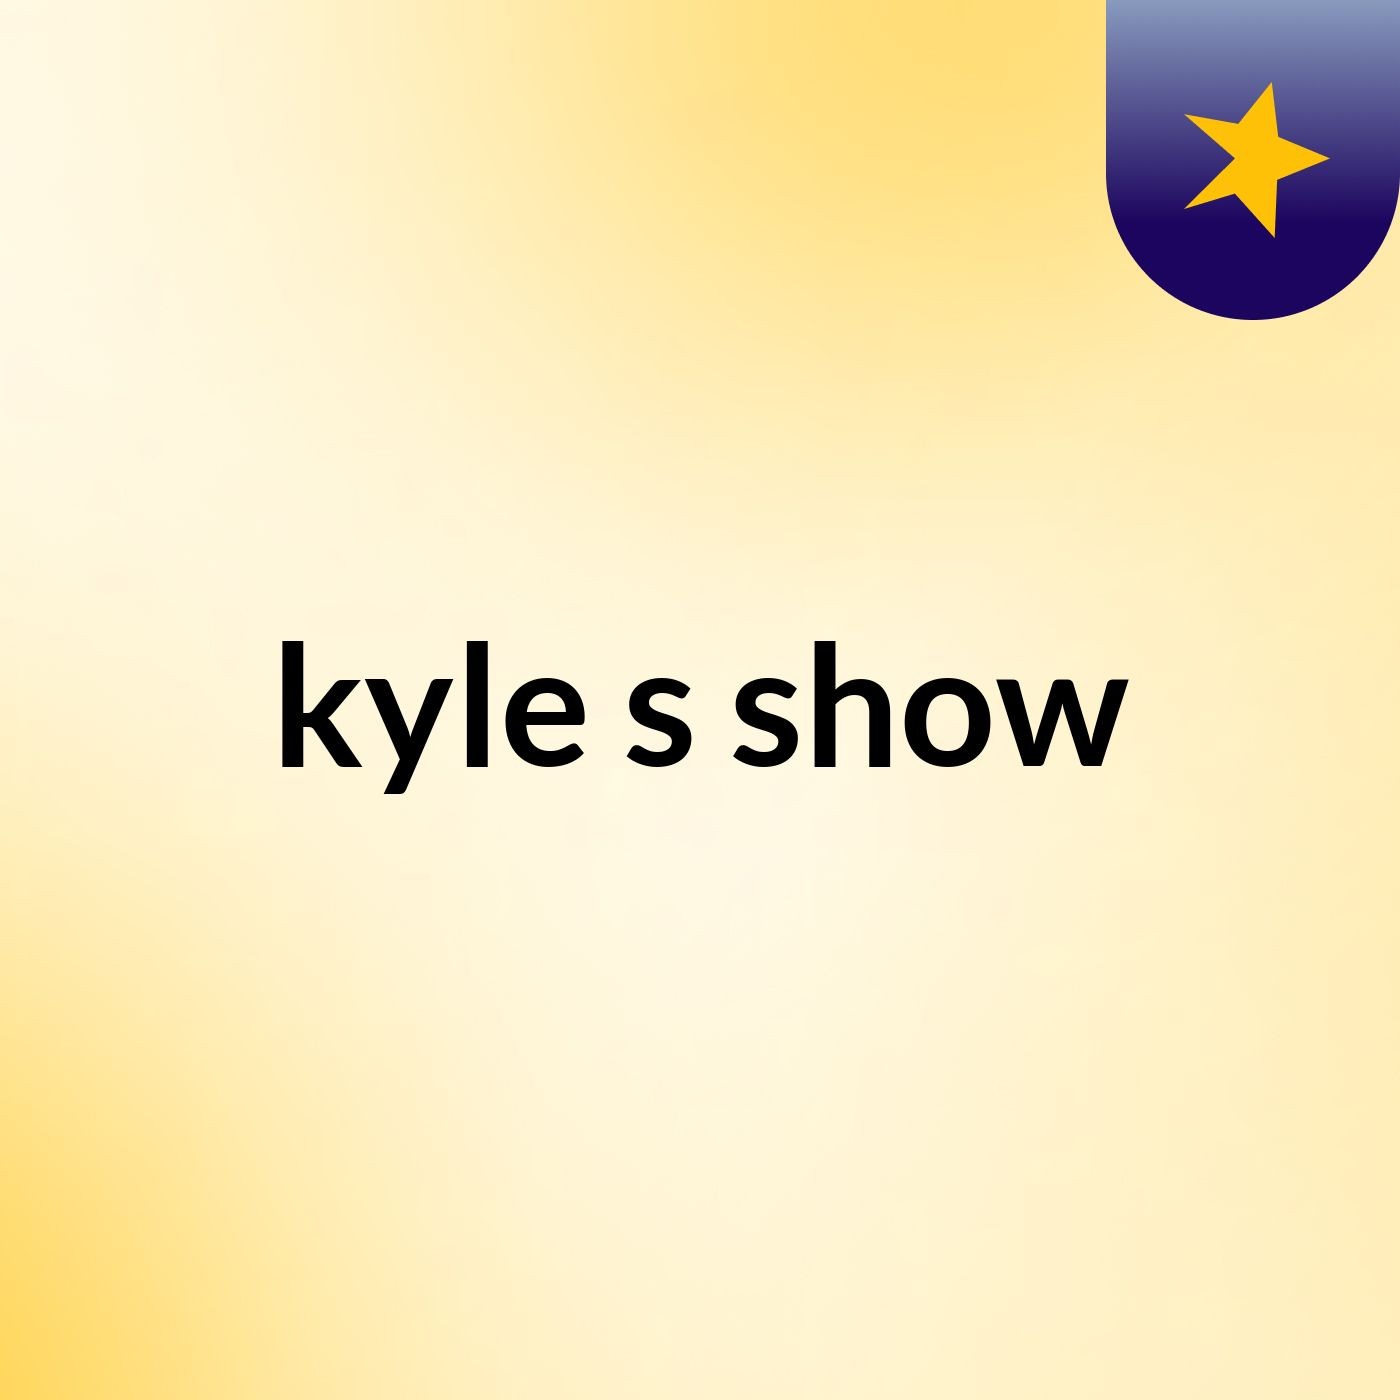 kyle's show